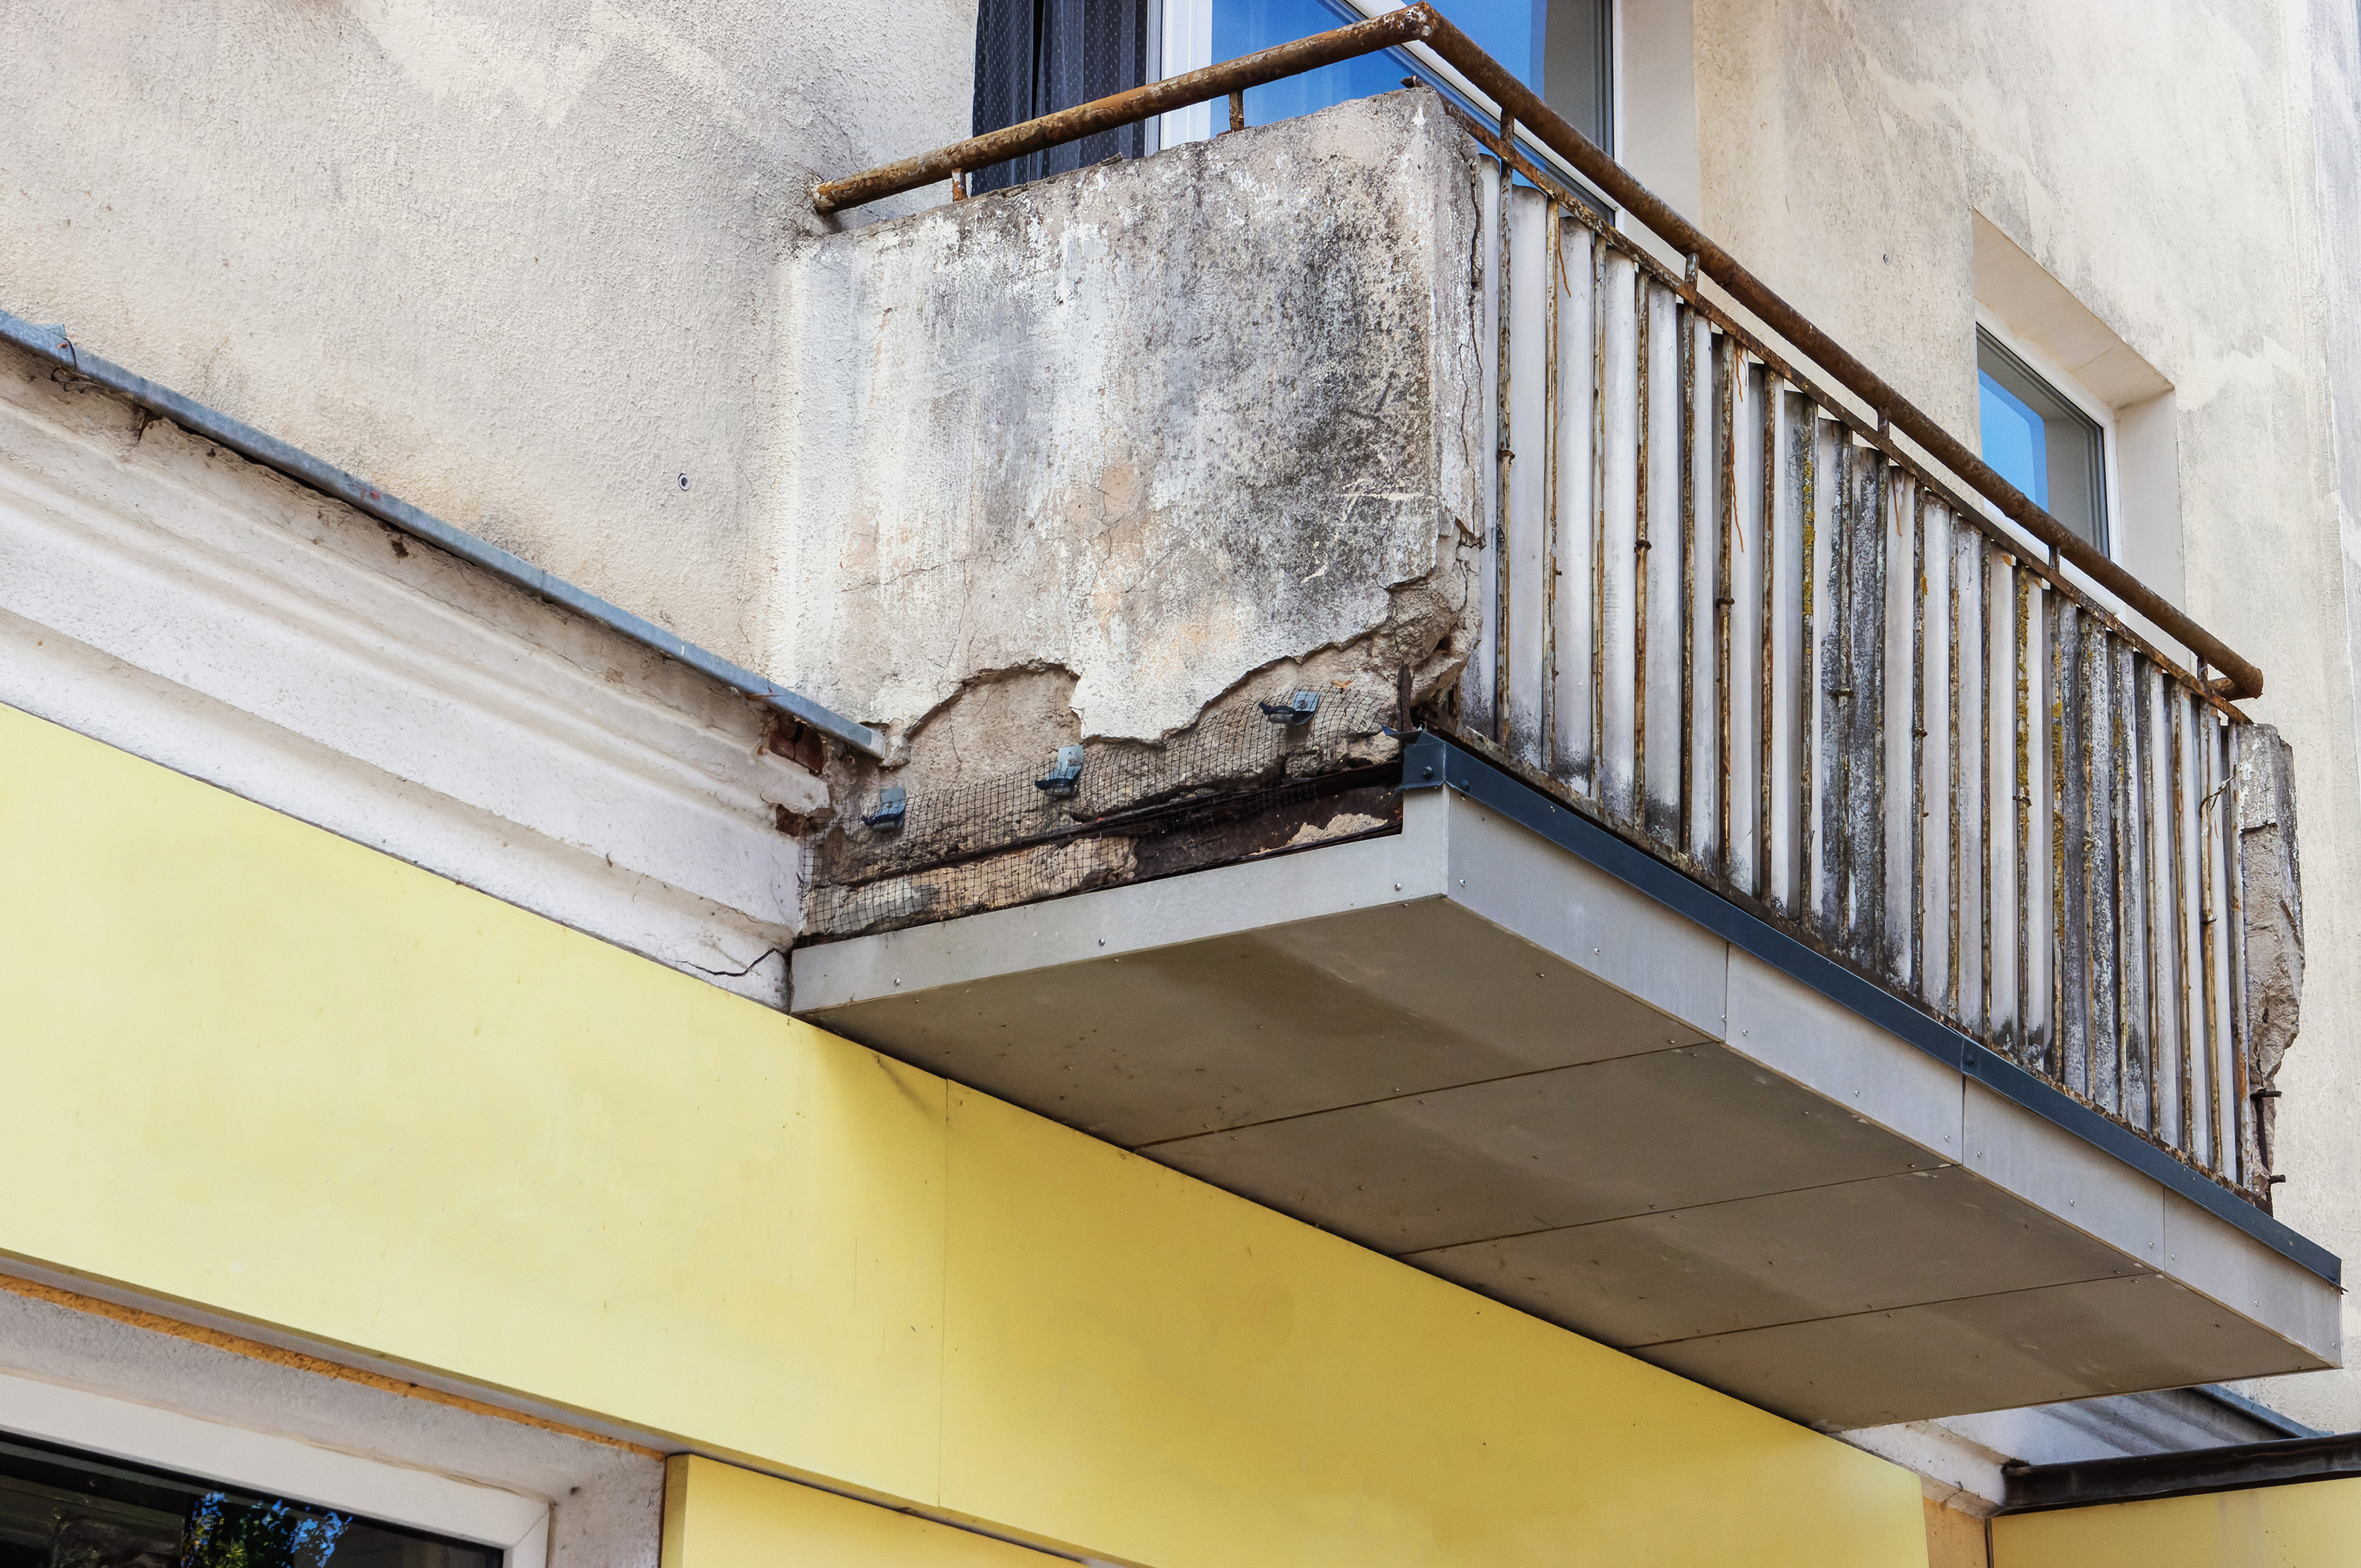 antibes : comment savoir si un balcon menace de s'effondrer ? les signes qui doivent vous alerter